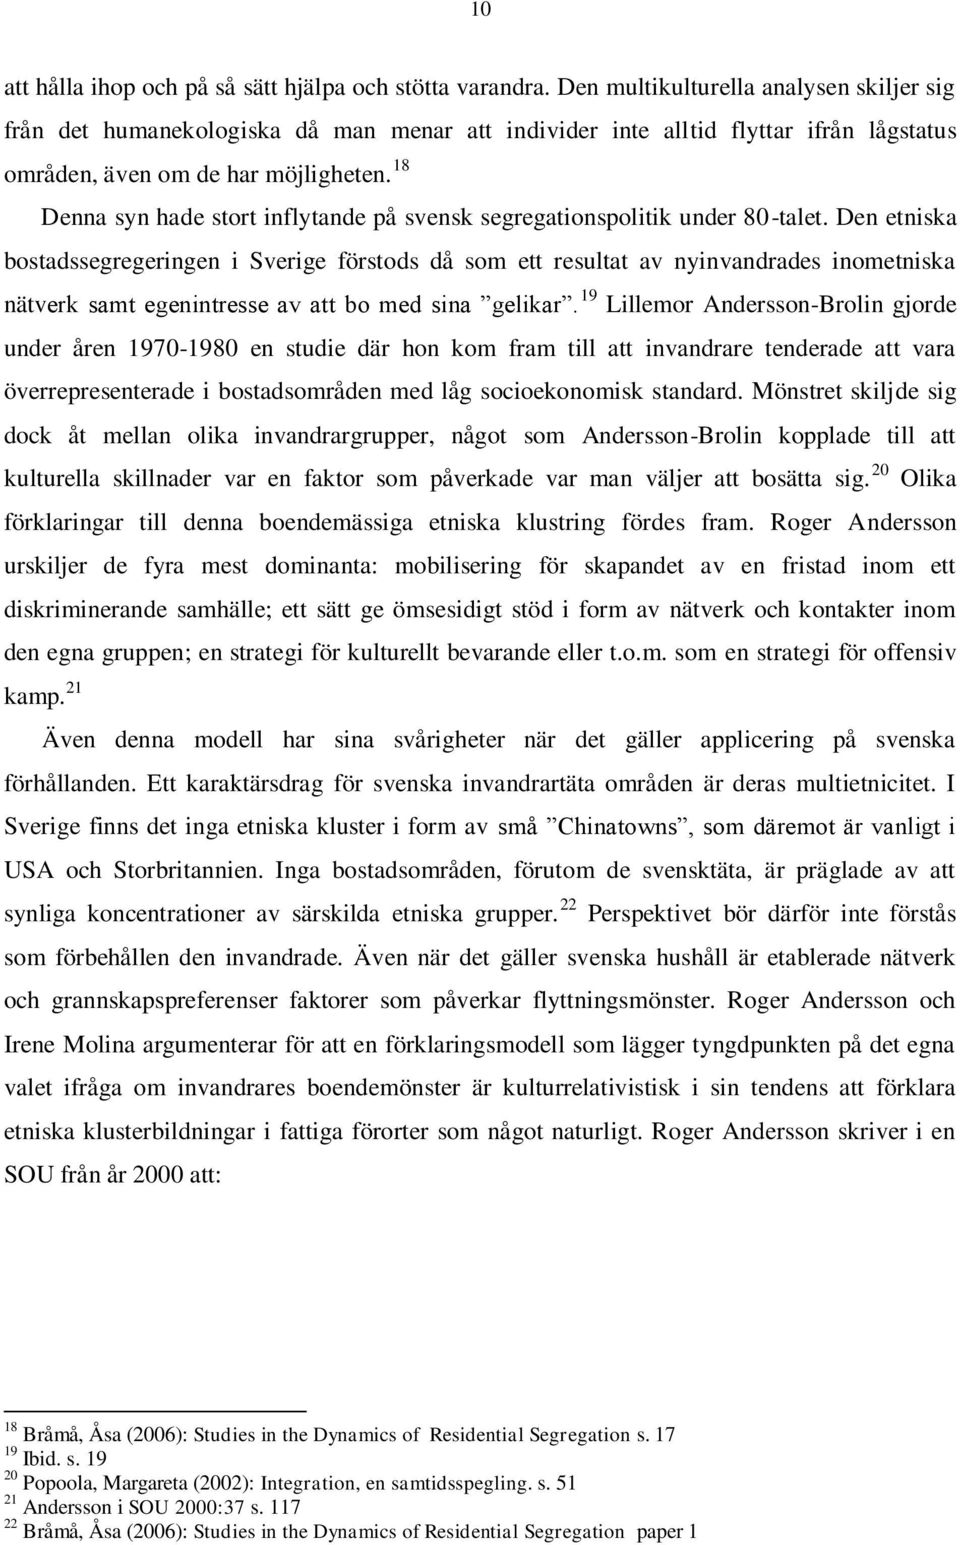 18 Denna syn hade stort inflytande på svensk segregationspolitik under 80-talet.